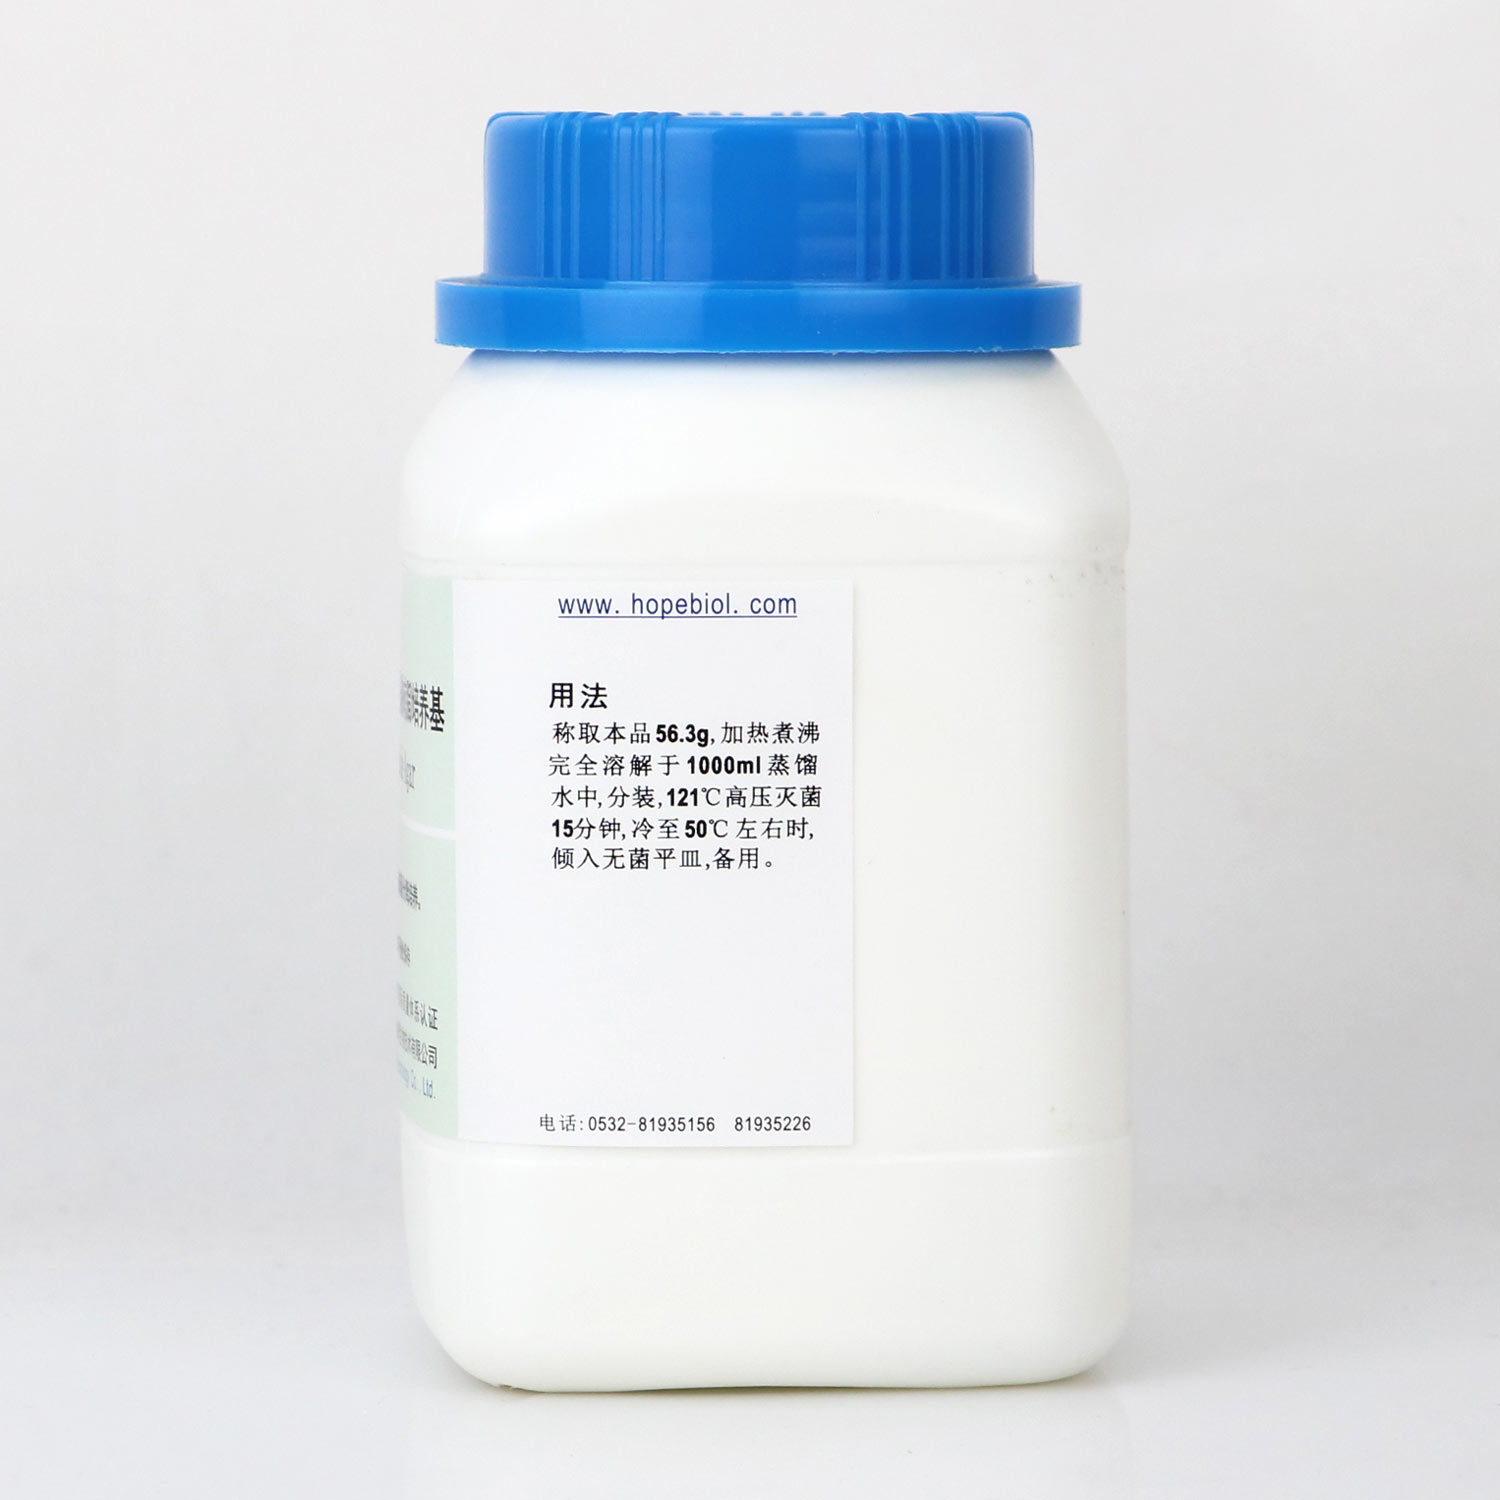 肠球菌琼脂(胆汁七叶苷叠氮钠琼脂)培养基用法